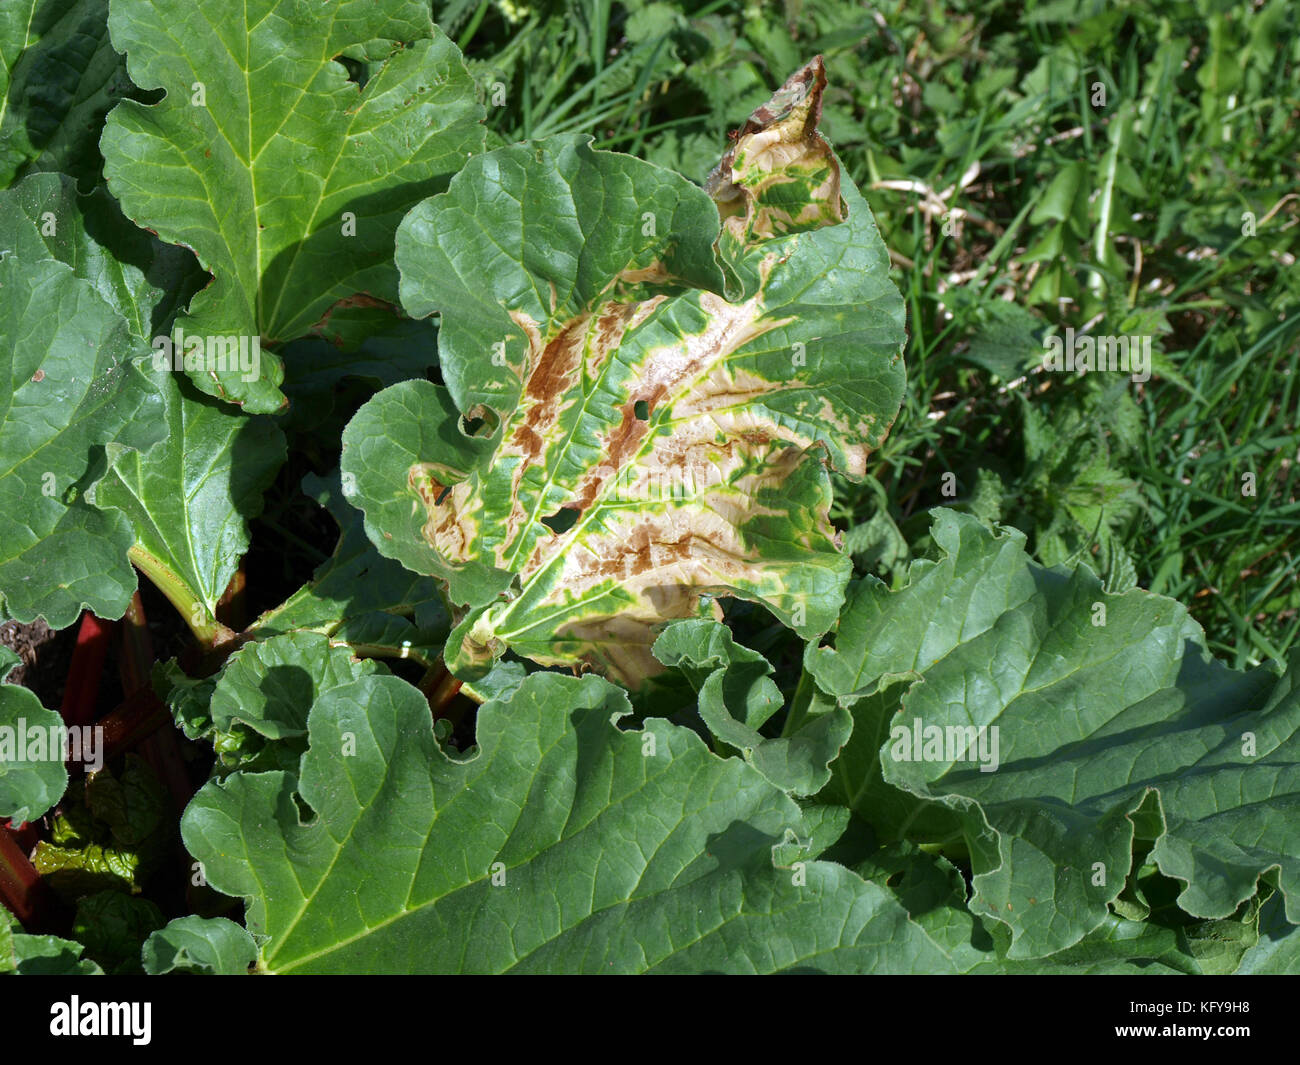 Gefleckte Rhabarber Blätter mit irgendeiner Krankheit beschädigt Stockfoto